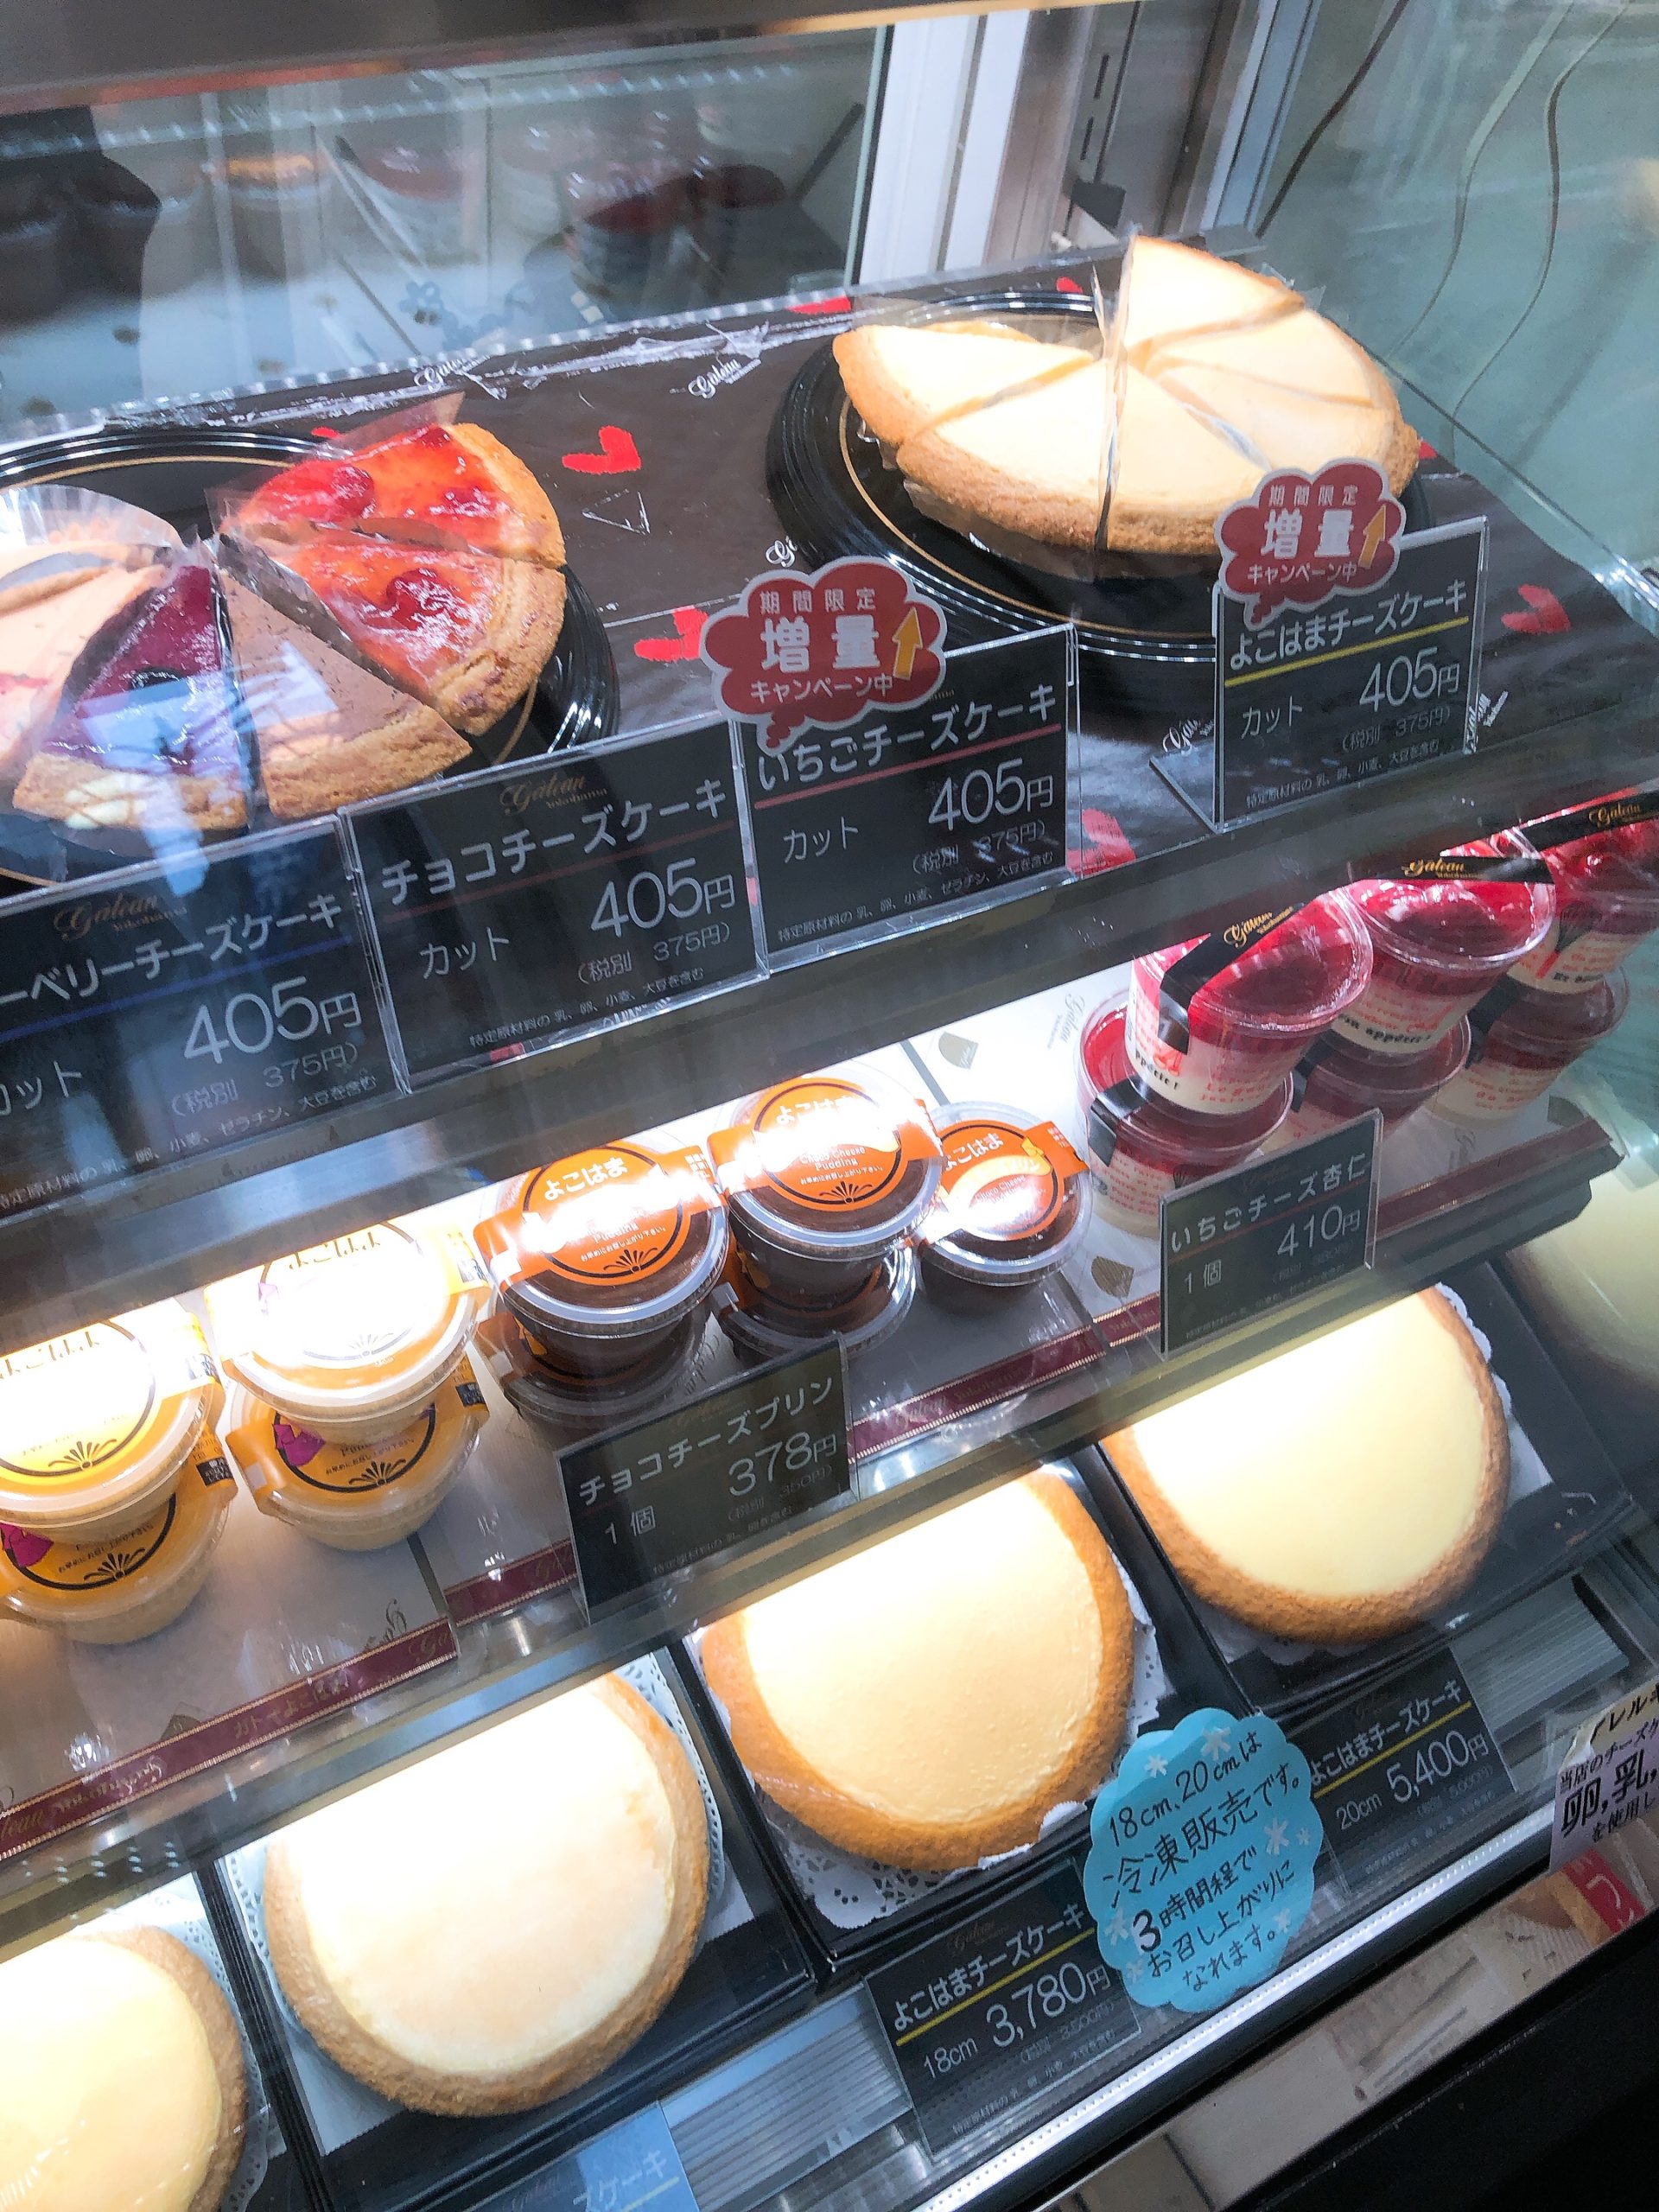 ガトーよこはま 伝説のチーズケーキを食べました 横浜のお土産にも最適 横浜情報ばこ